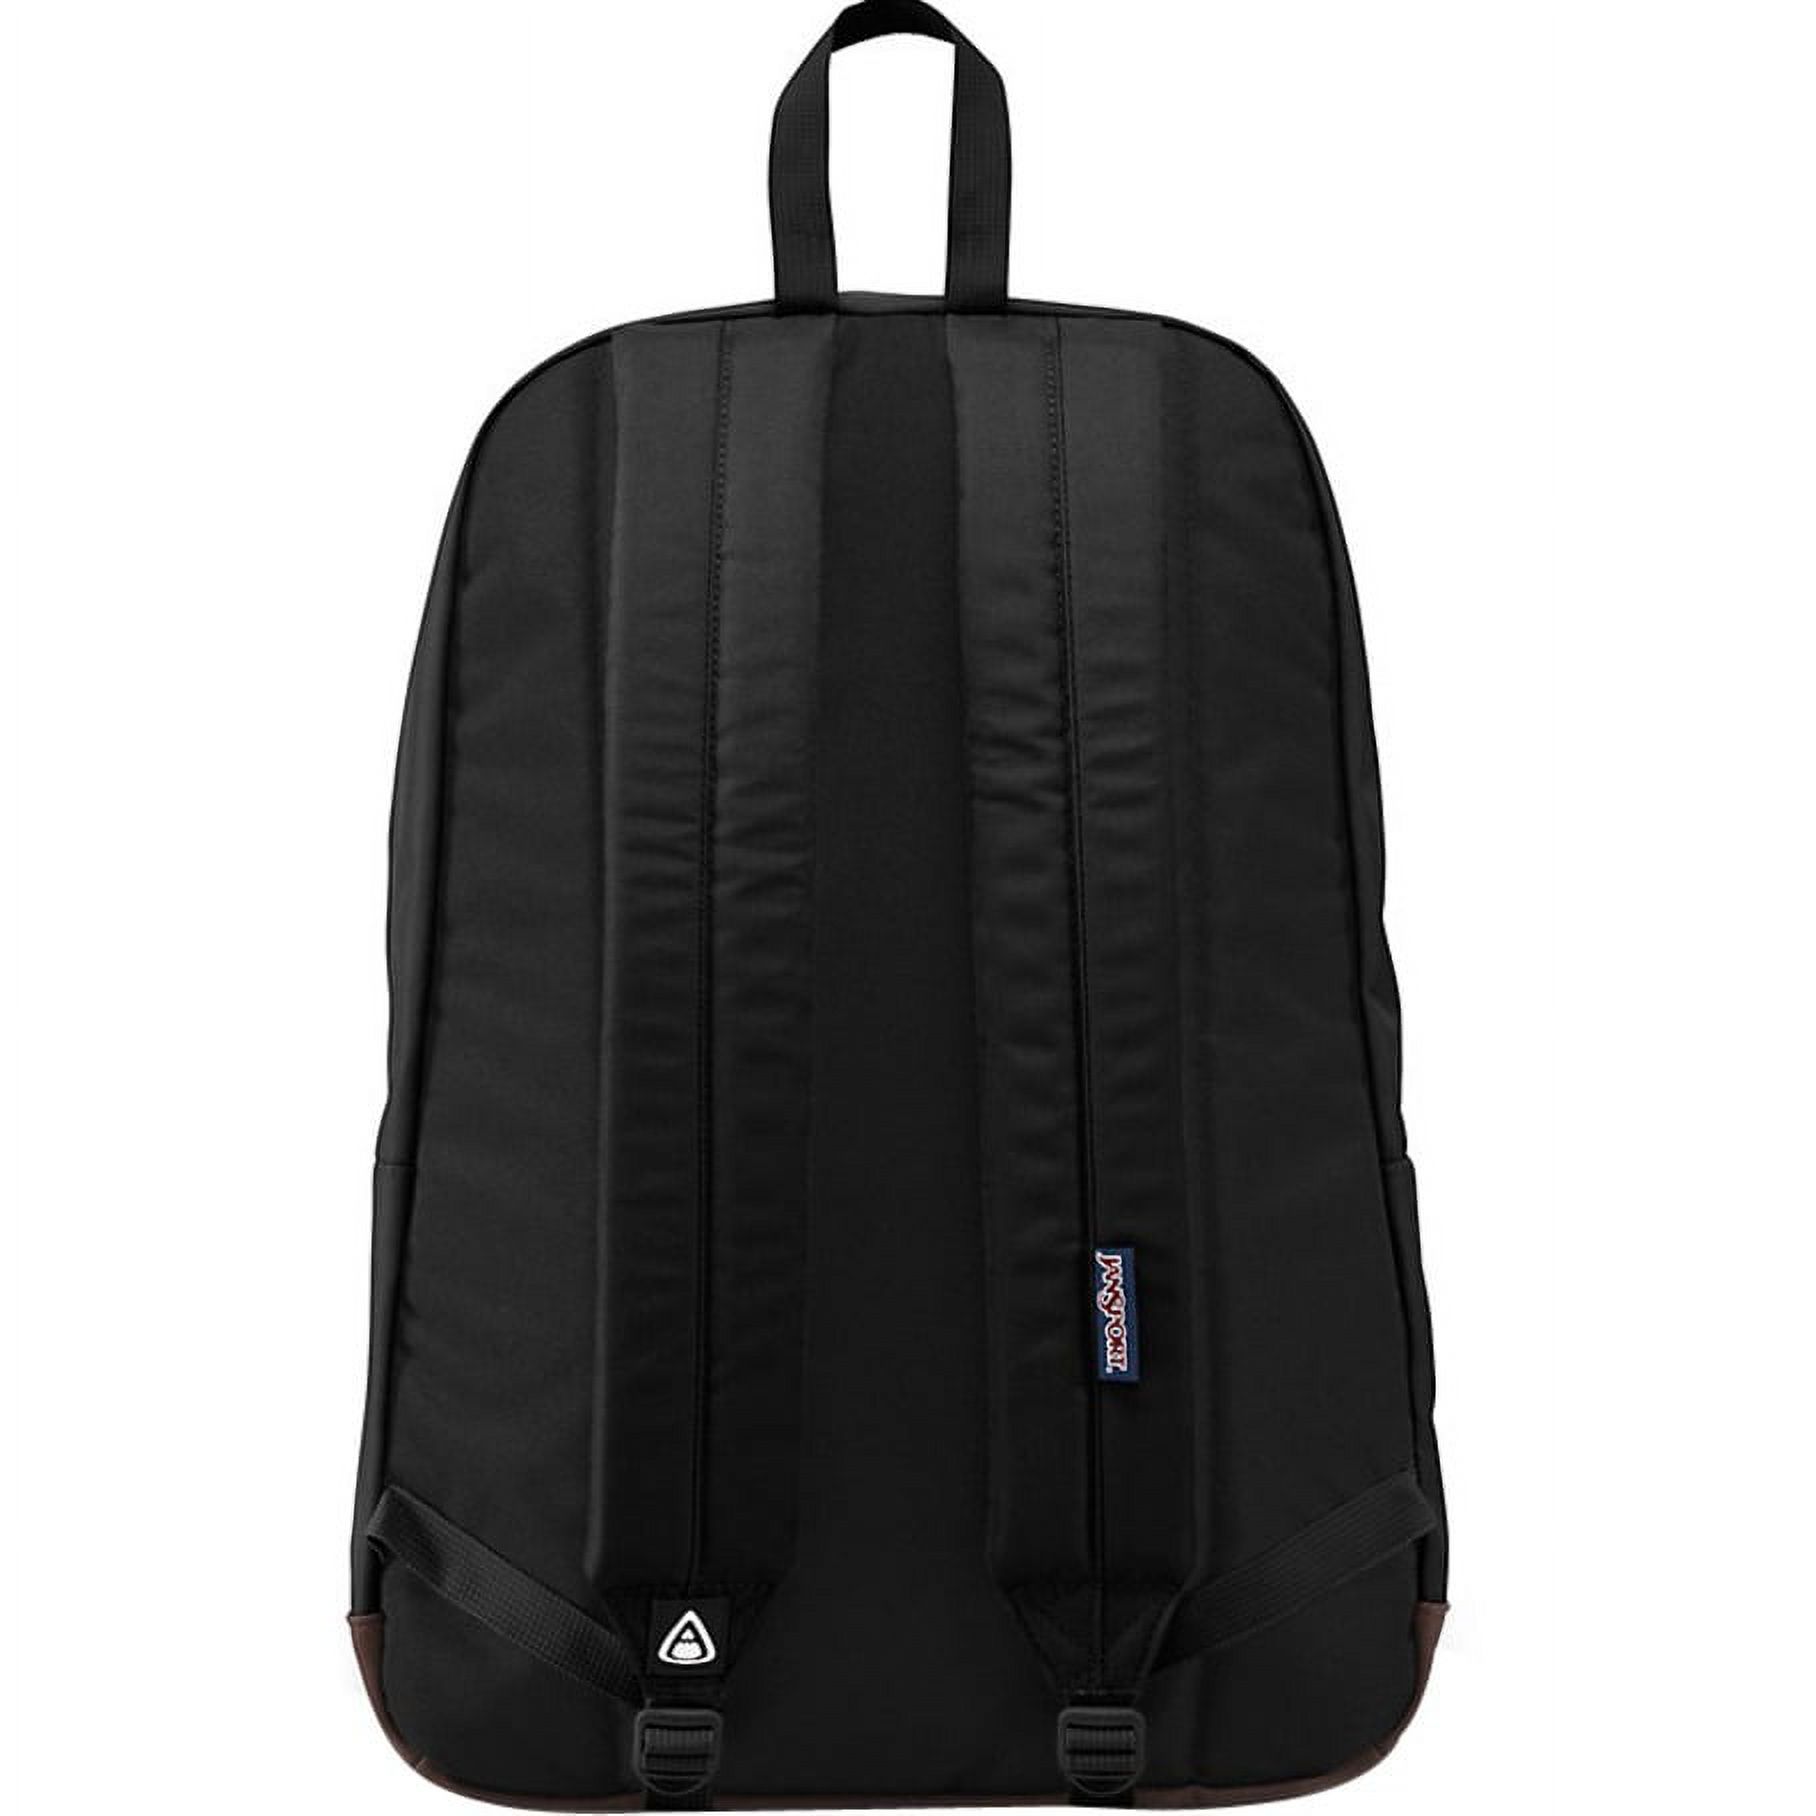 Jansport Cortlandt Carrying Case (Backpack) for 15" Notebook, Black - image 2 of 4